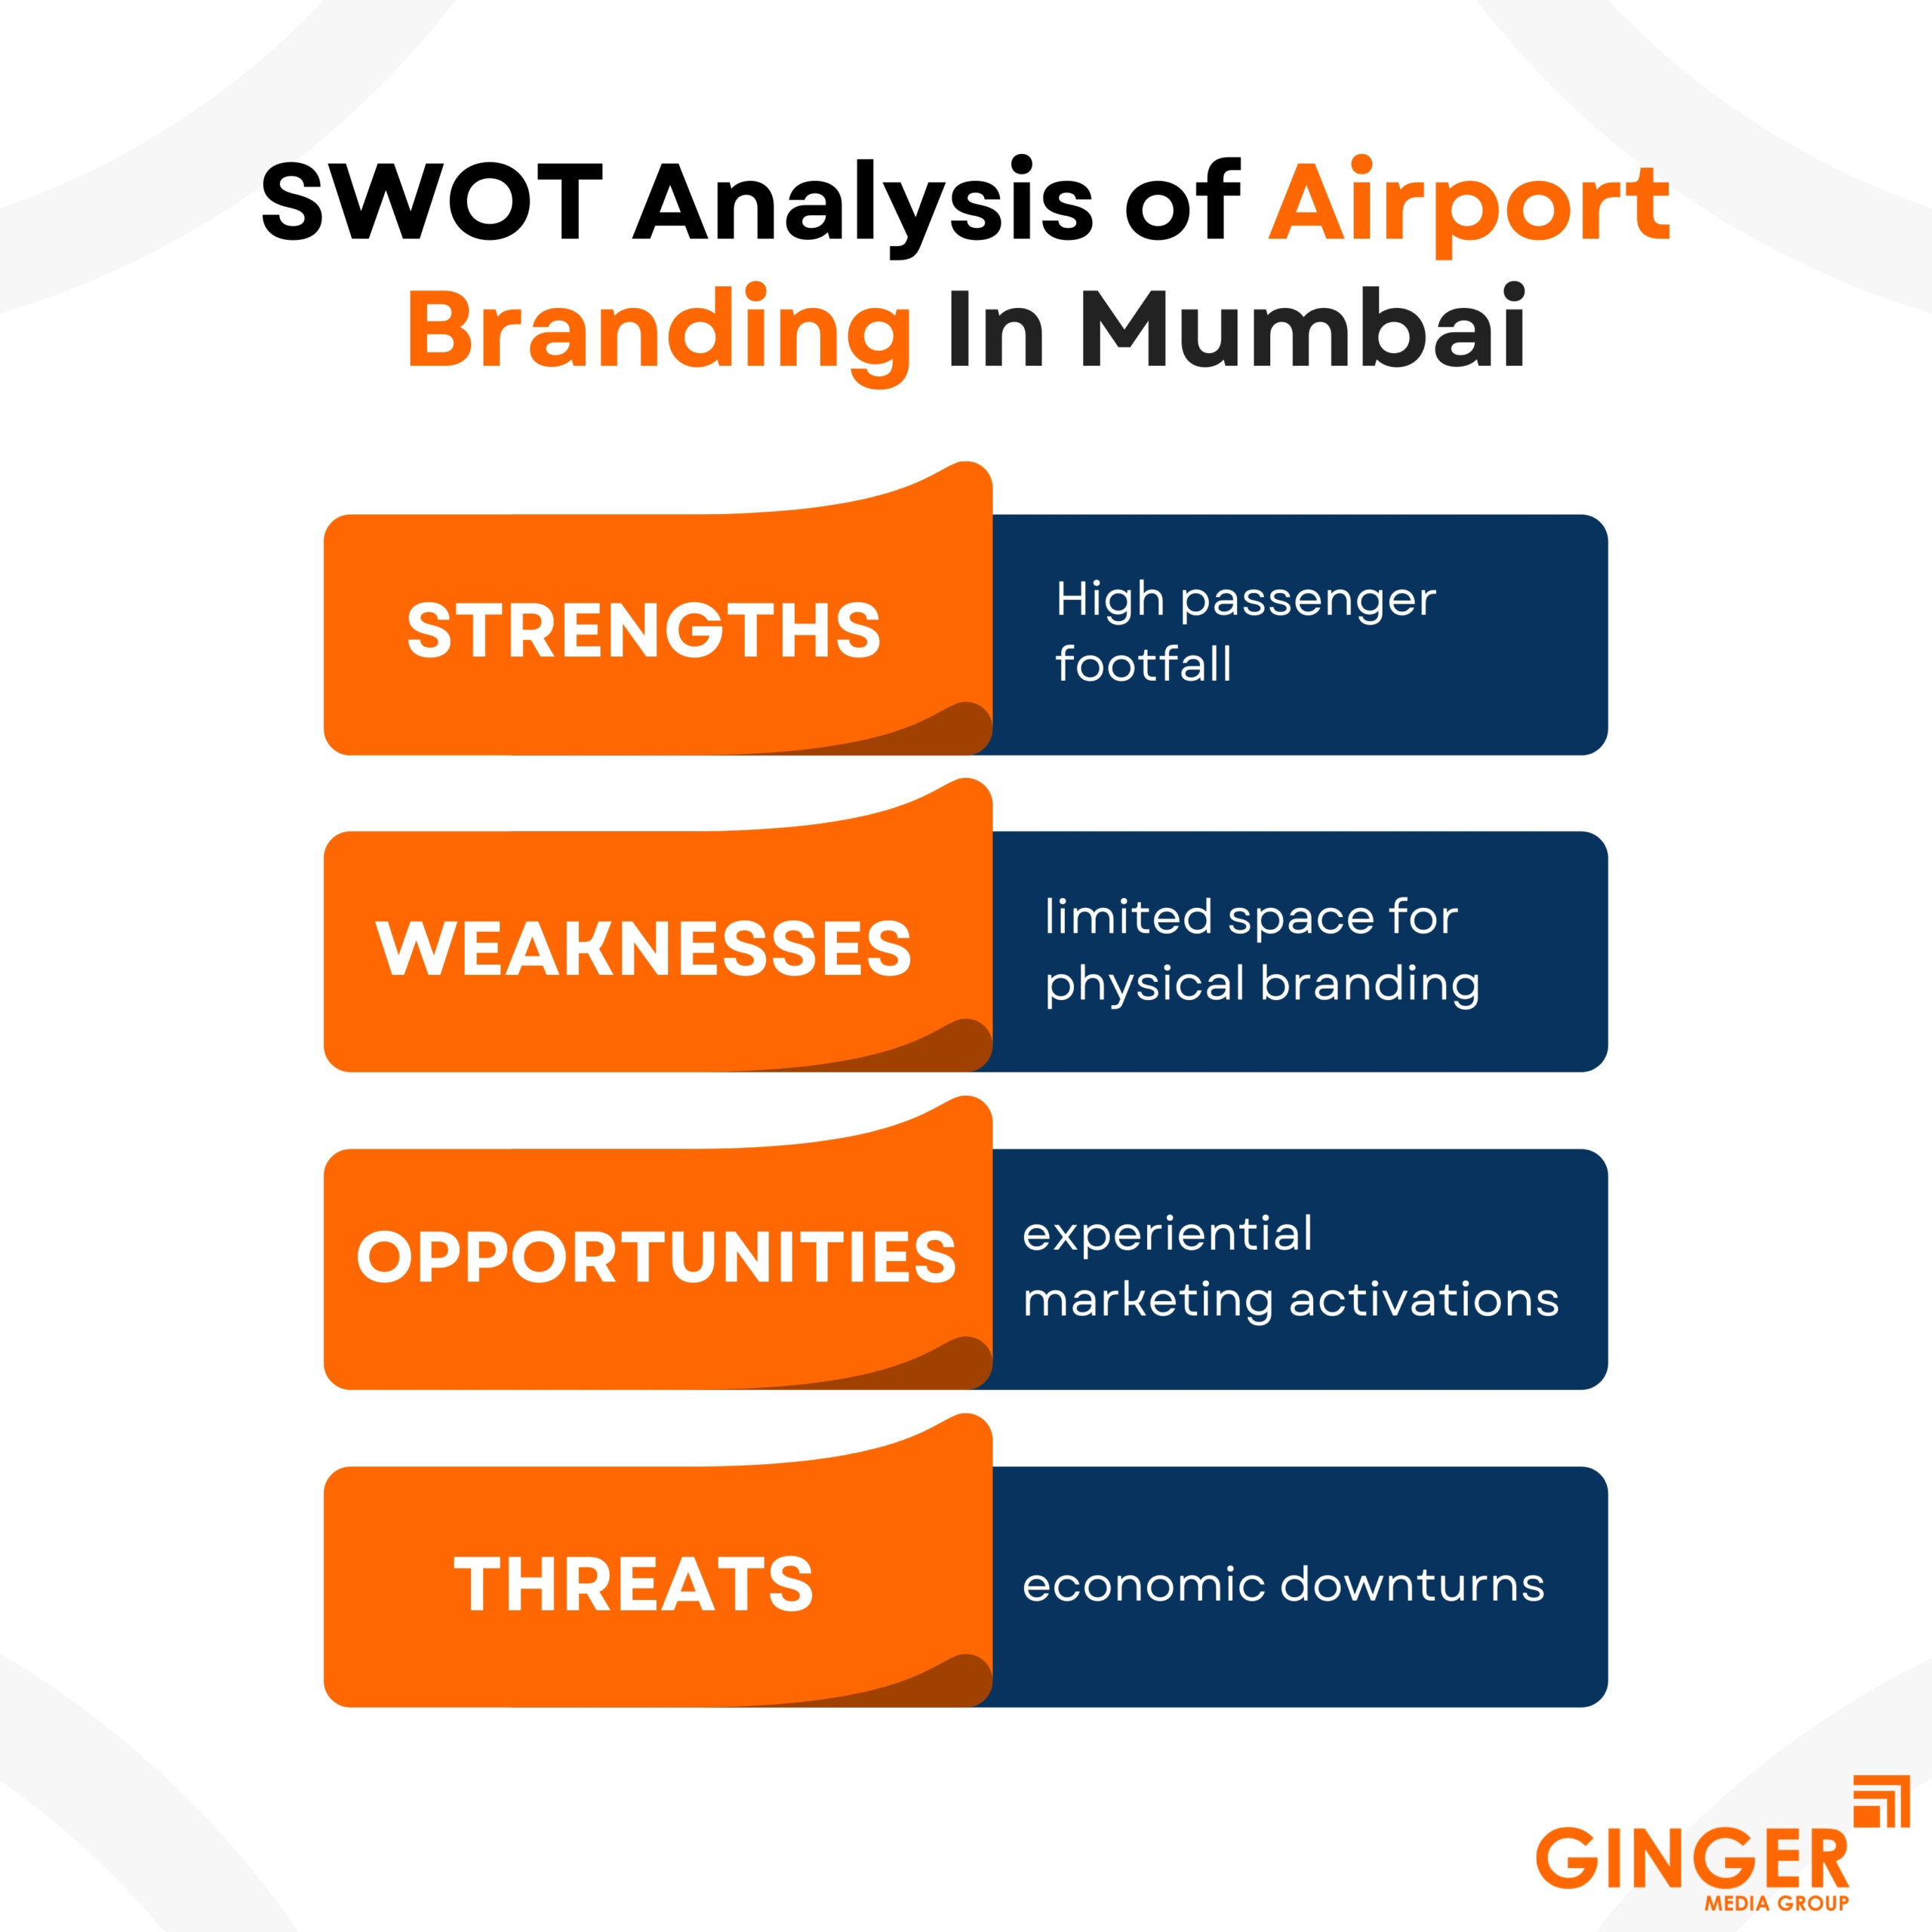 swat analysis of airport branding in mumbai